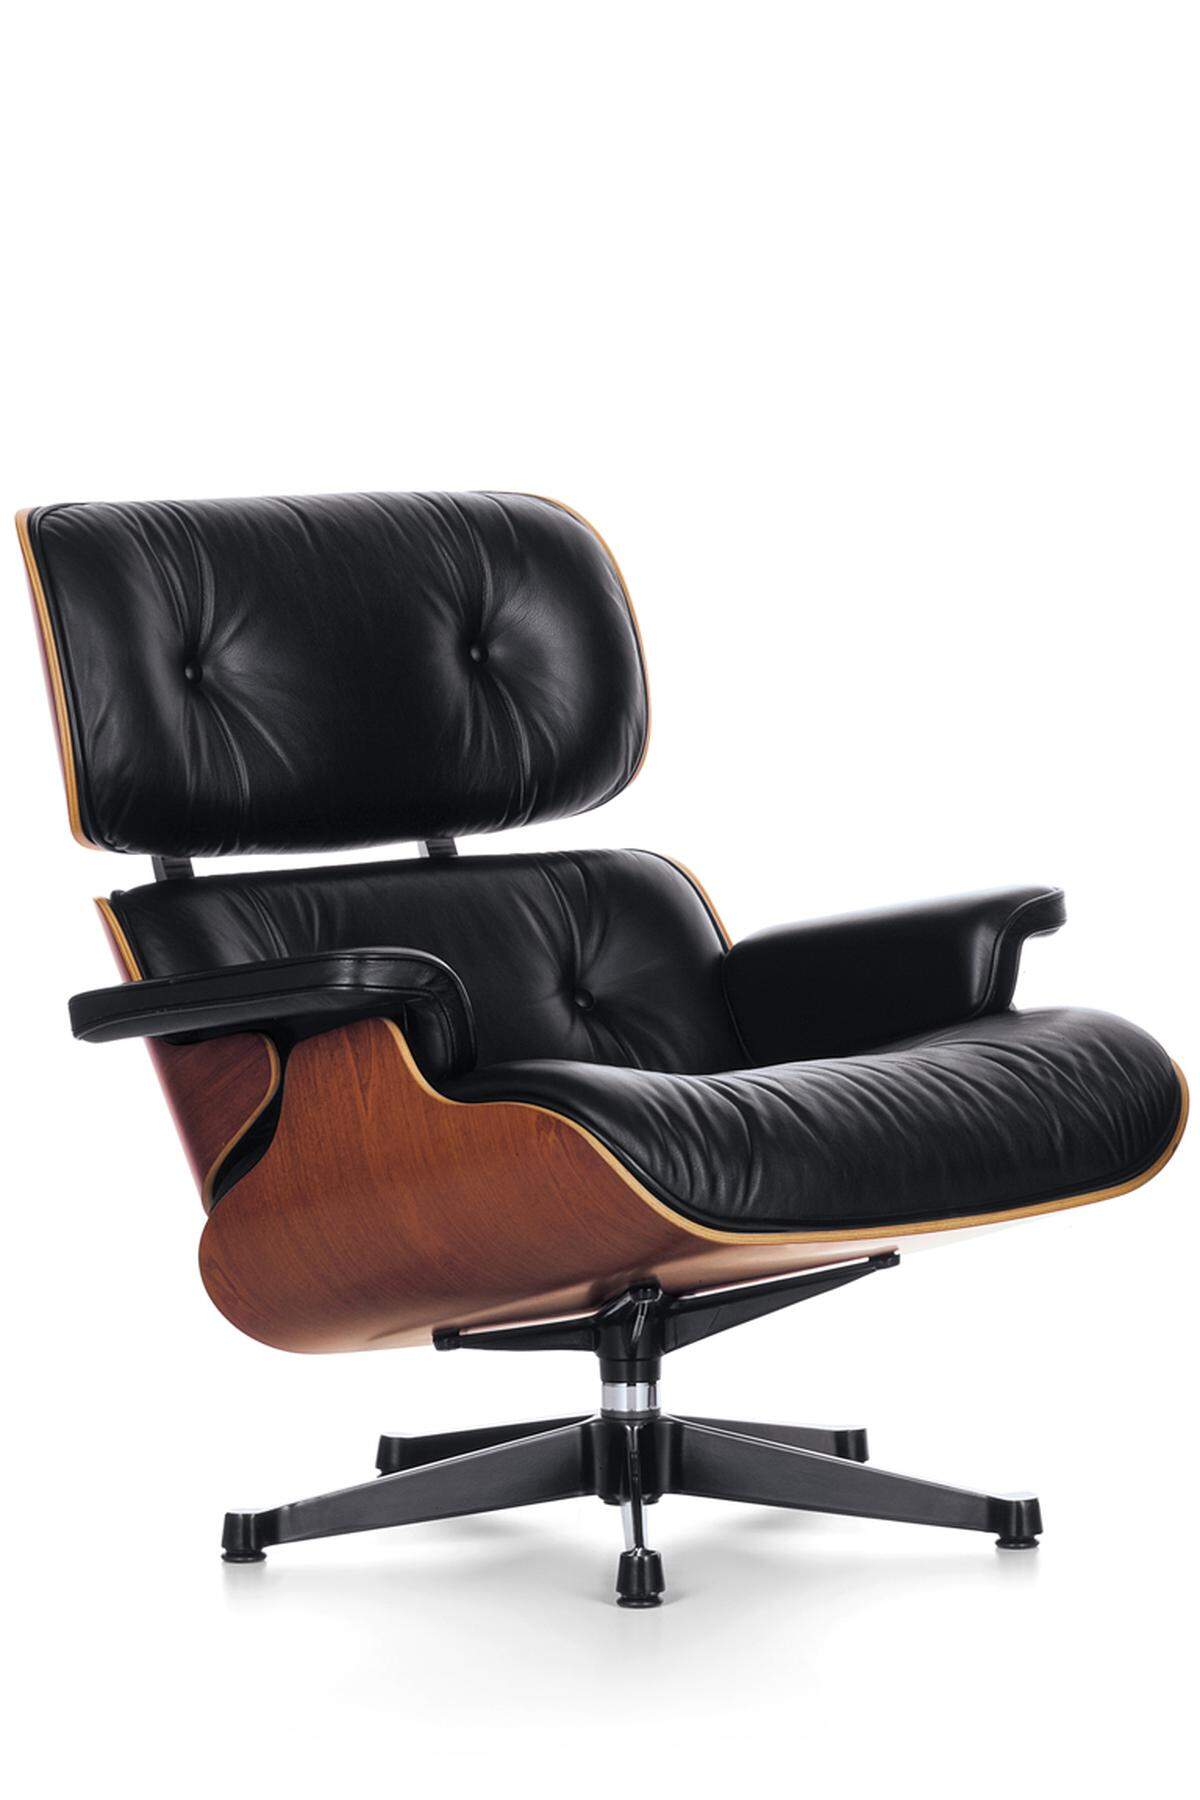 Vor allem der „Lounge Chair“ zieht sich so selbstverständlich durch die Designgeschichte, als wäre er schon immer da gewesen. Eames hatte Mitte der 1950er-Jahre den englischen Klubsessel modern interpretiert und bis ins Detail gefinkelt ausgetüftelt. Die Anmutung eines weichen Baseballhandschuhs sollte er haben, in dem man bequem versinken kann. Vitra produziert das Modell seit dem Jahr 1959 ohne Unterbrechung.